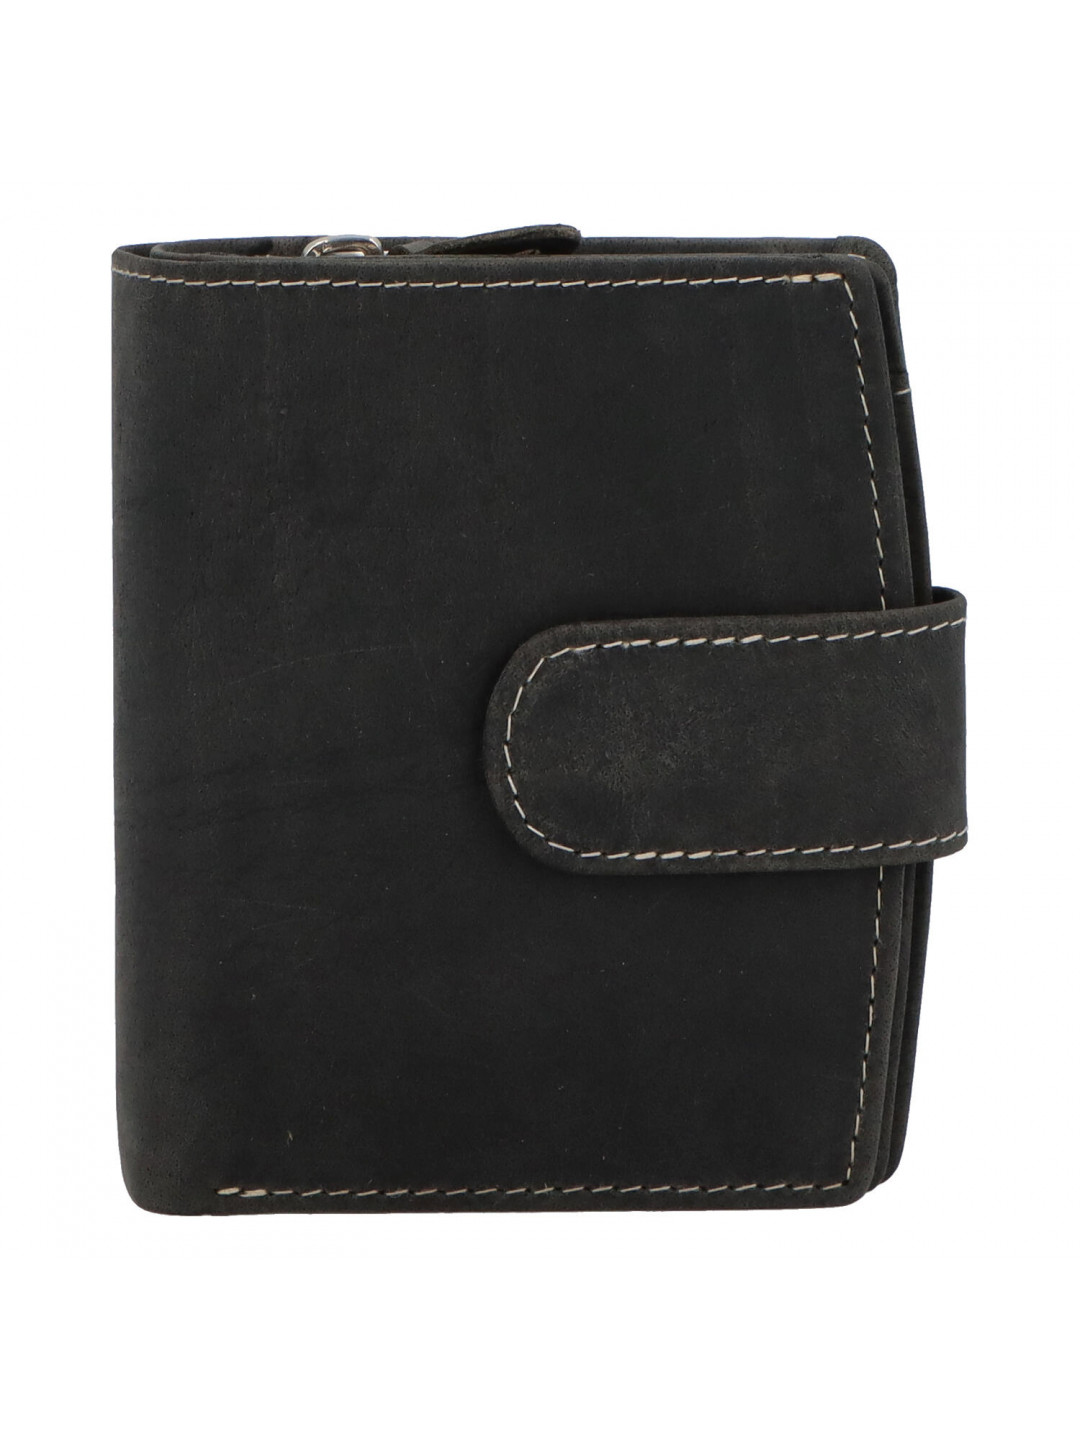 Dámská kožená peněženka černá broušená – Tomas Coulenzy